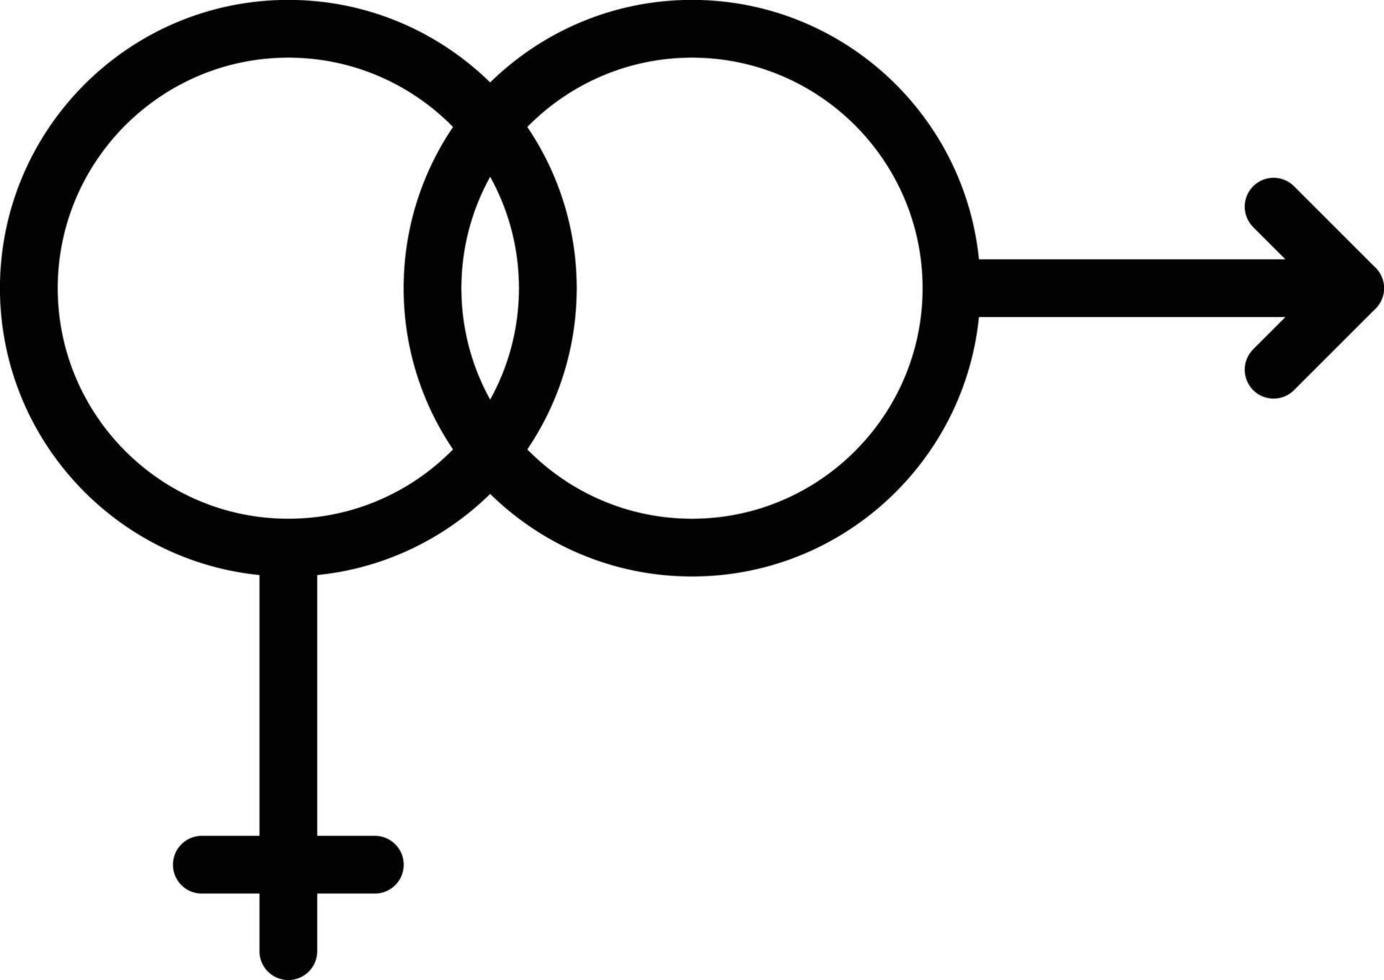 geschlechtsvektorillustration auf einem hintergrund. hochwertige symbole. vektorsymbole für konzept und grafikdesign. vektor